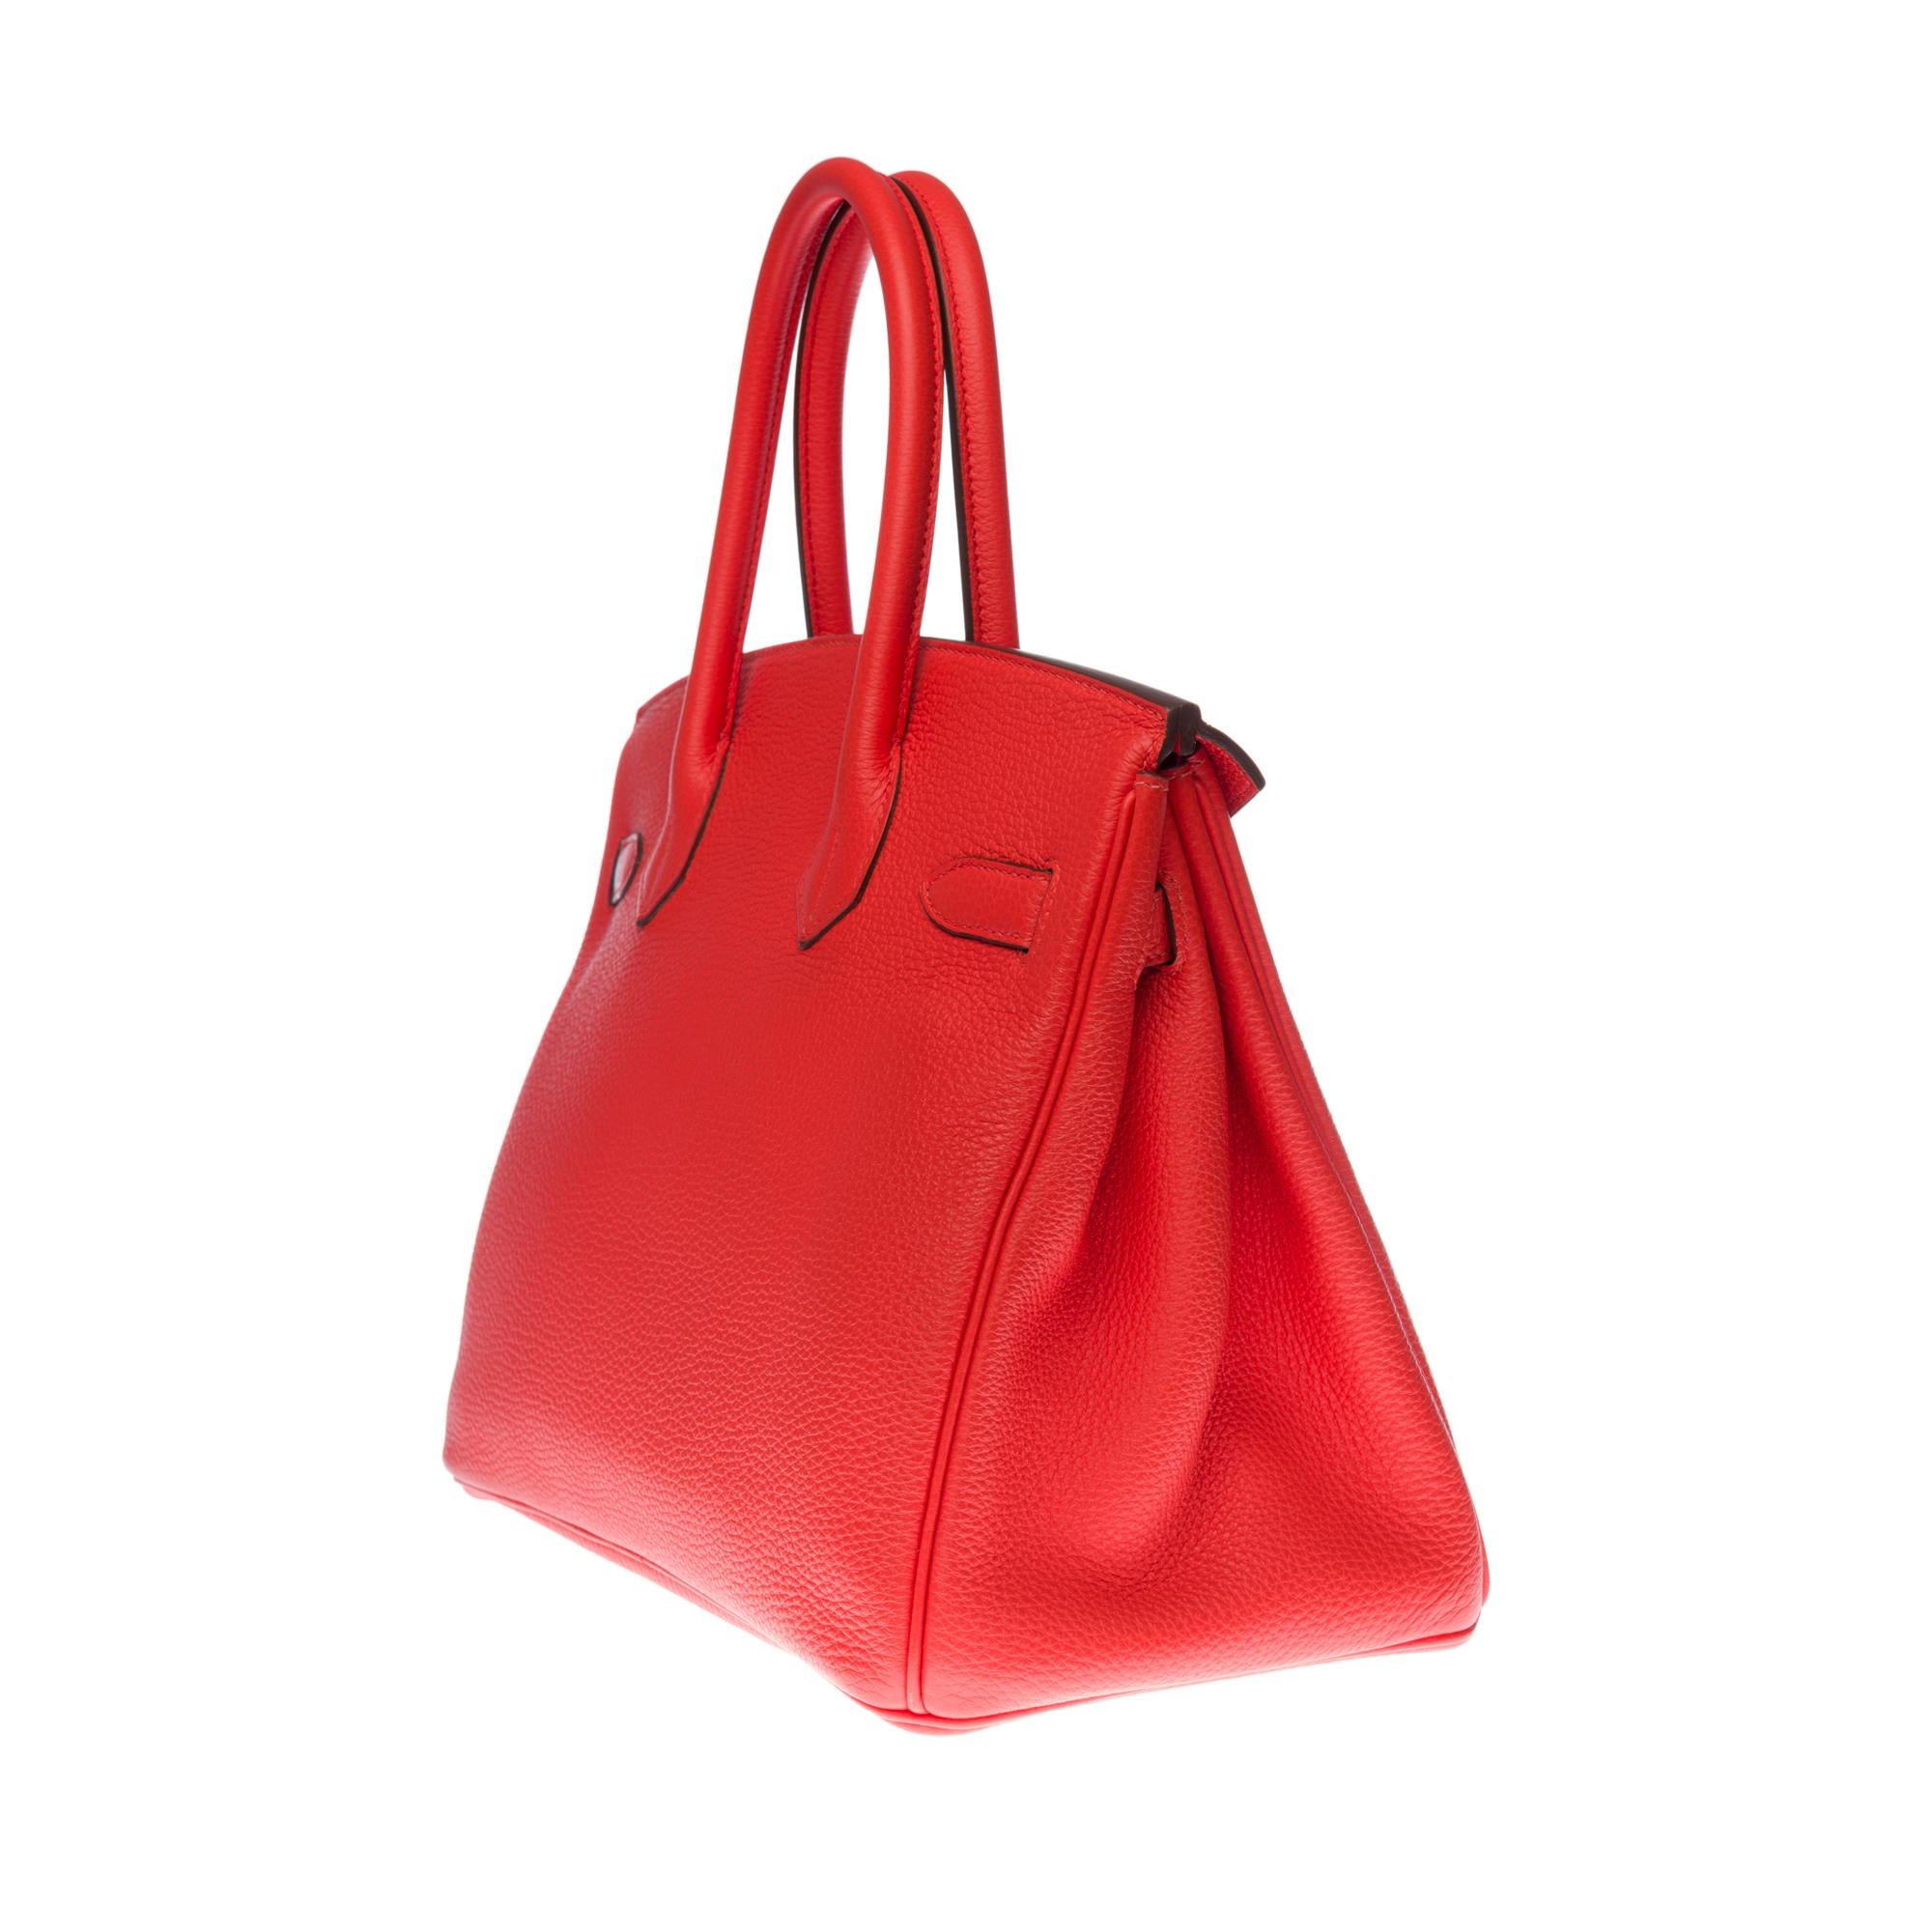 Stunning Hermès Birkin 30 handbag in Rouge Capucine Togo leather, GHW In Excellent Condition In Paris, IDF